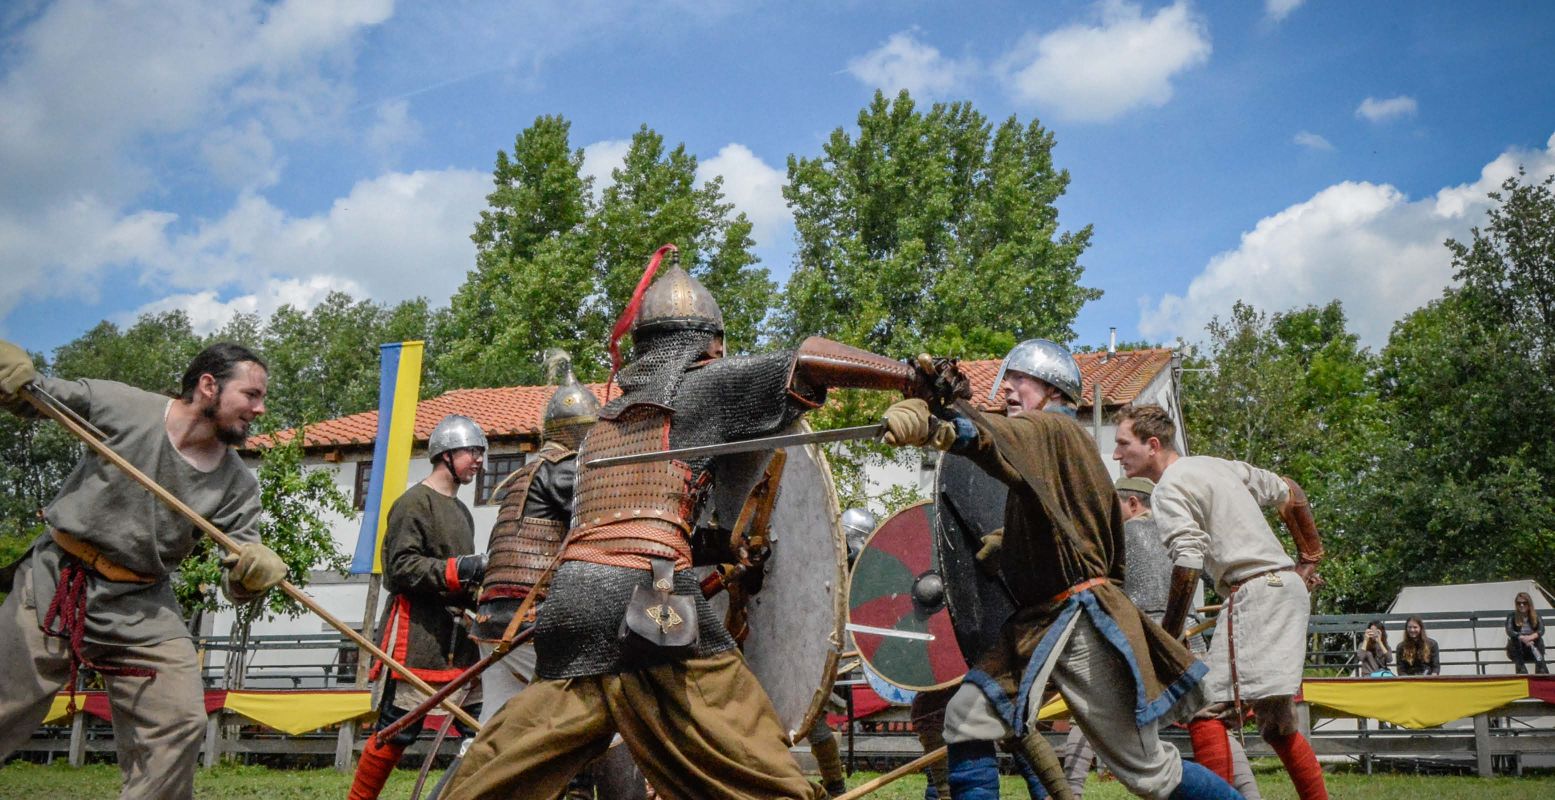 Het gaat er heftig aan toe tijdens het Internationaal Viking Festival! Foto: Archeon